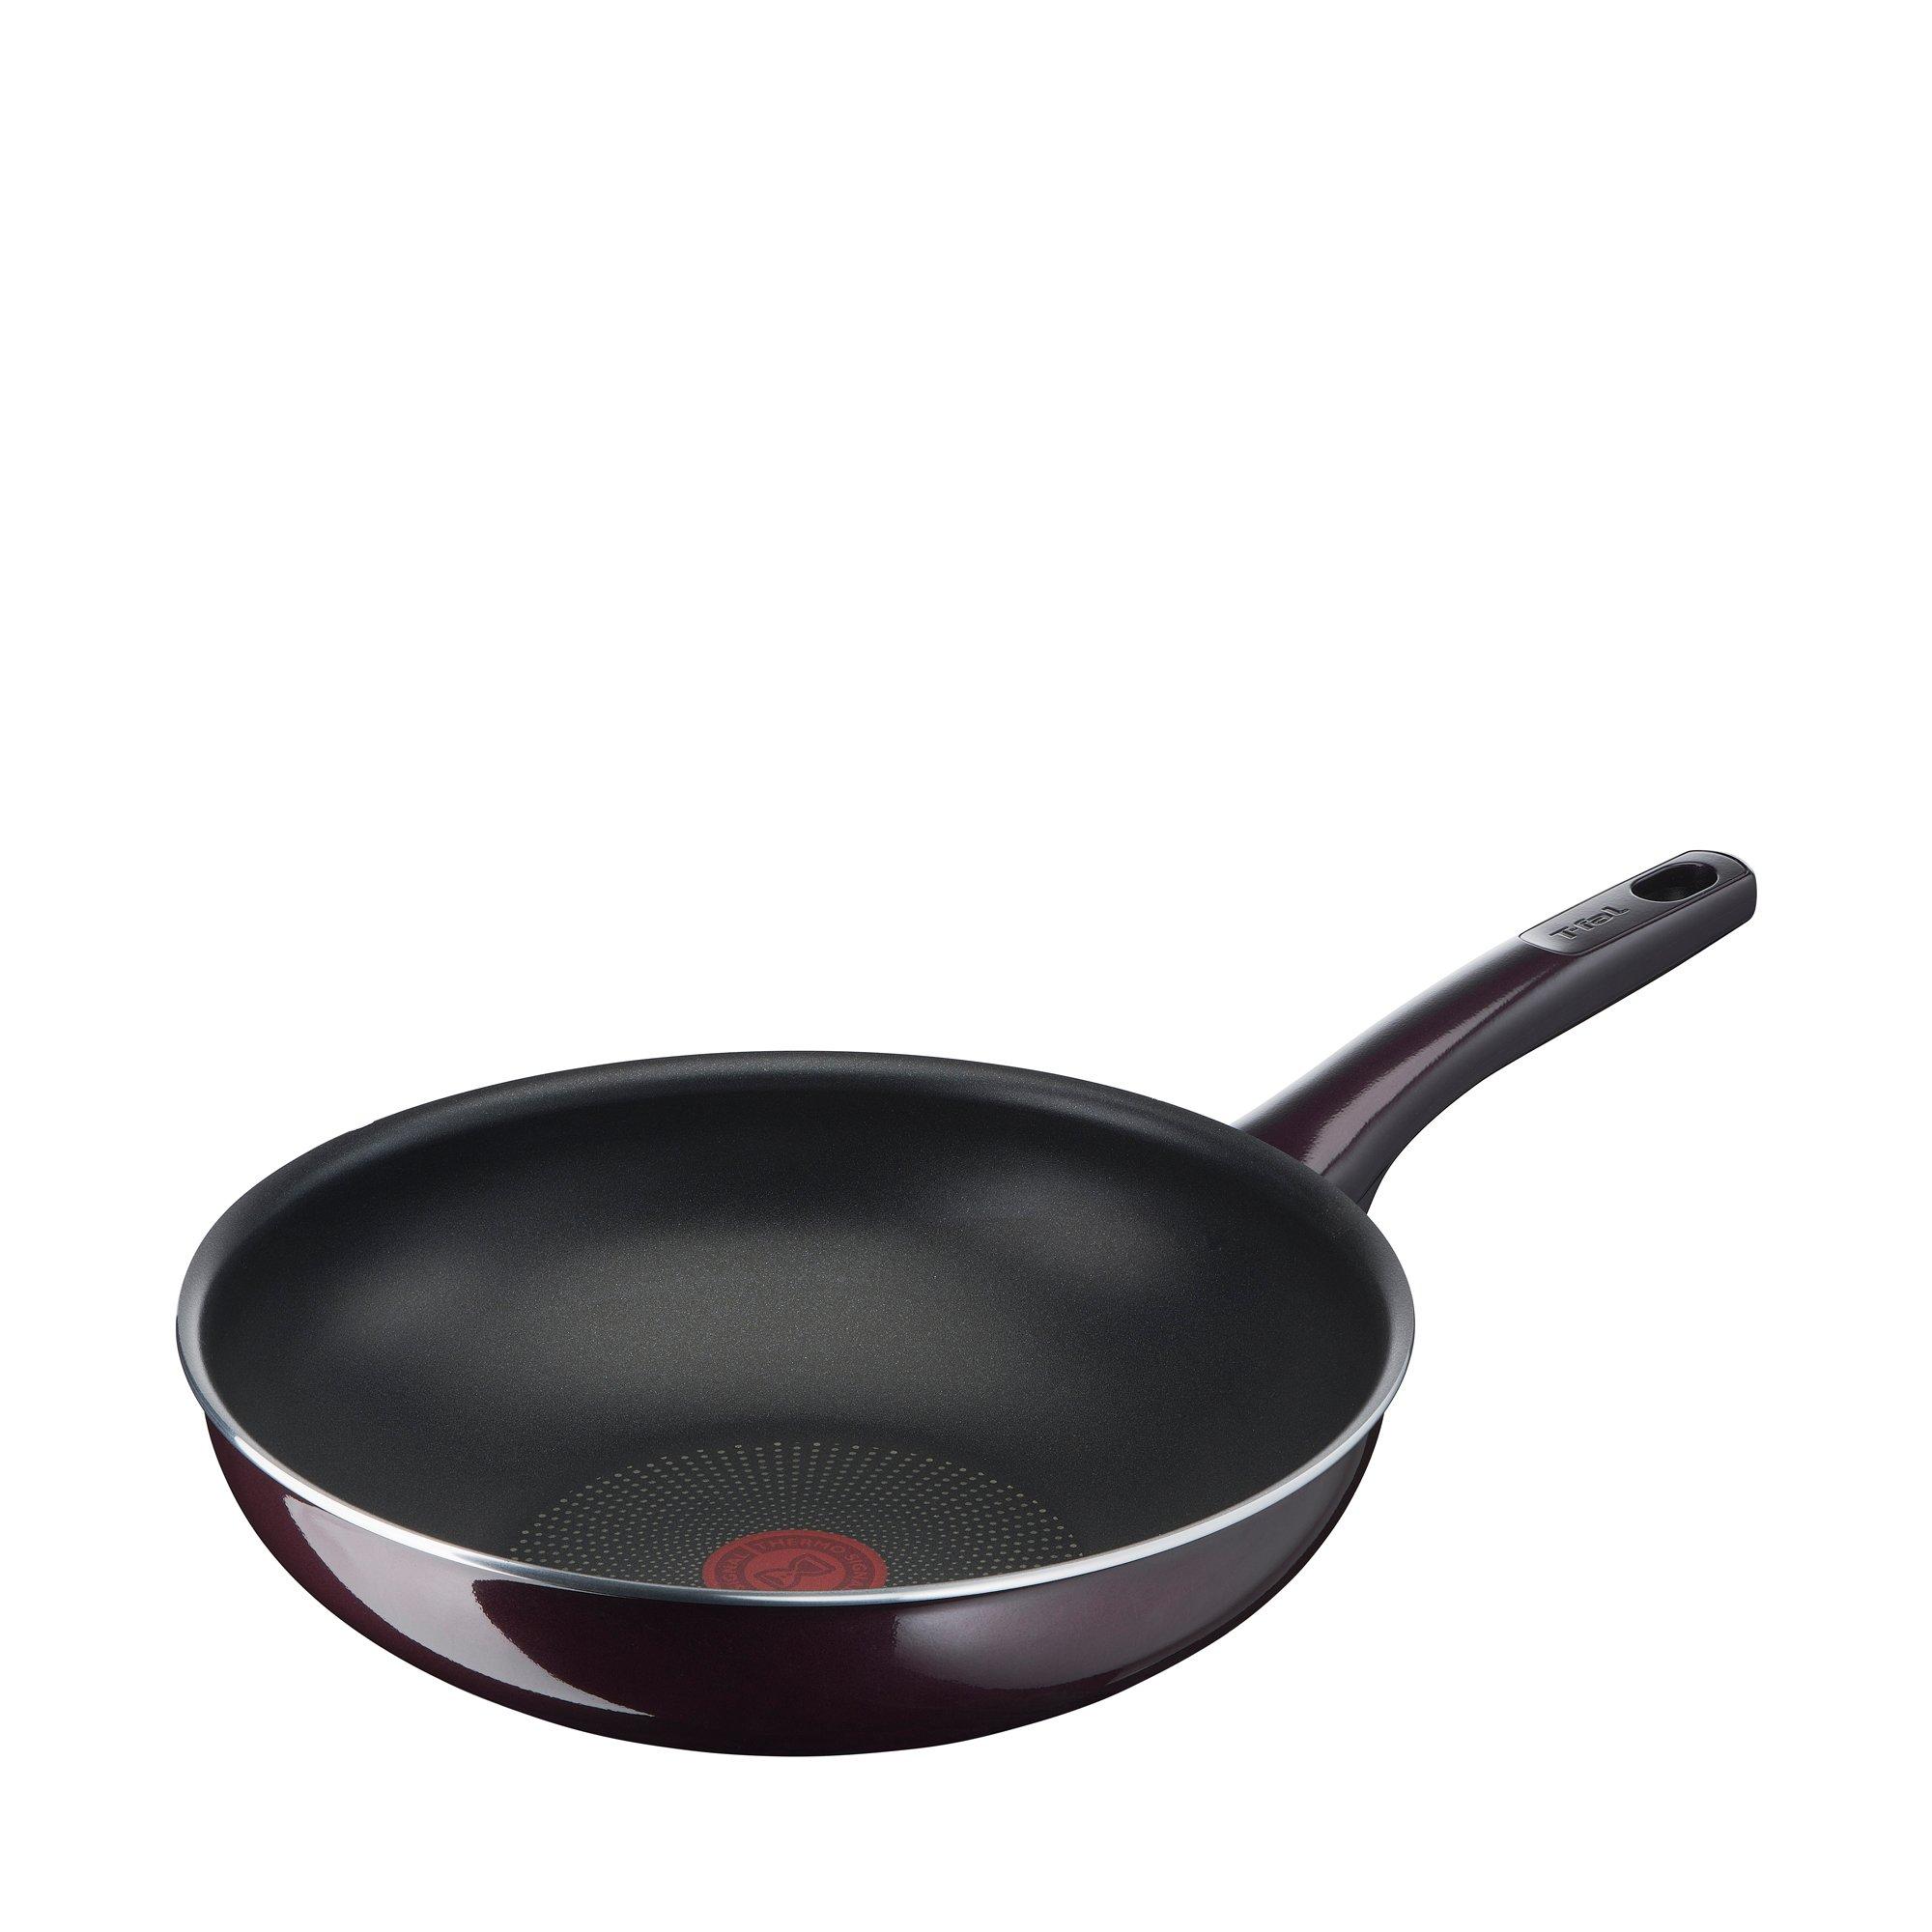 TEFAL poêle wok antiadhésive haute performance résistante aux rayures 28 cm